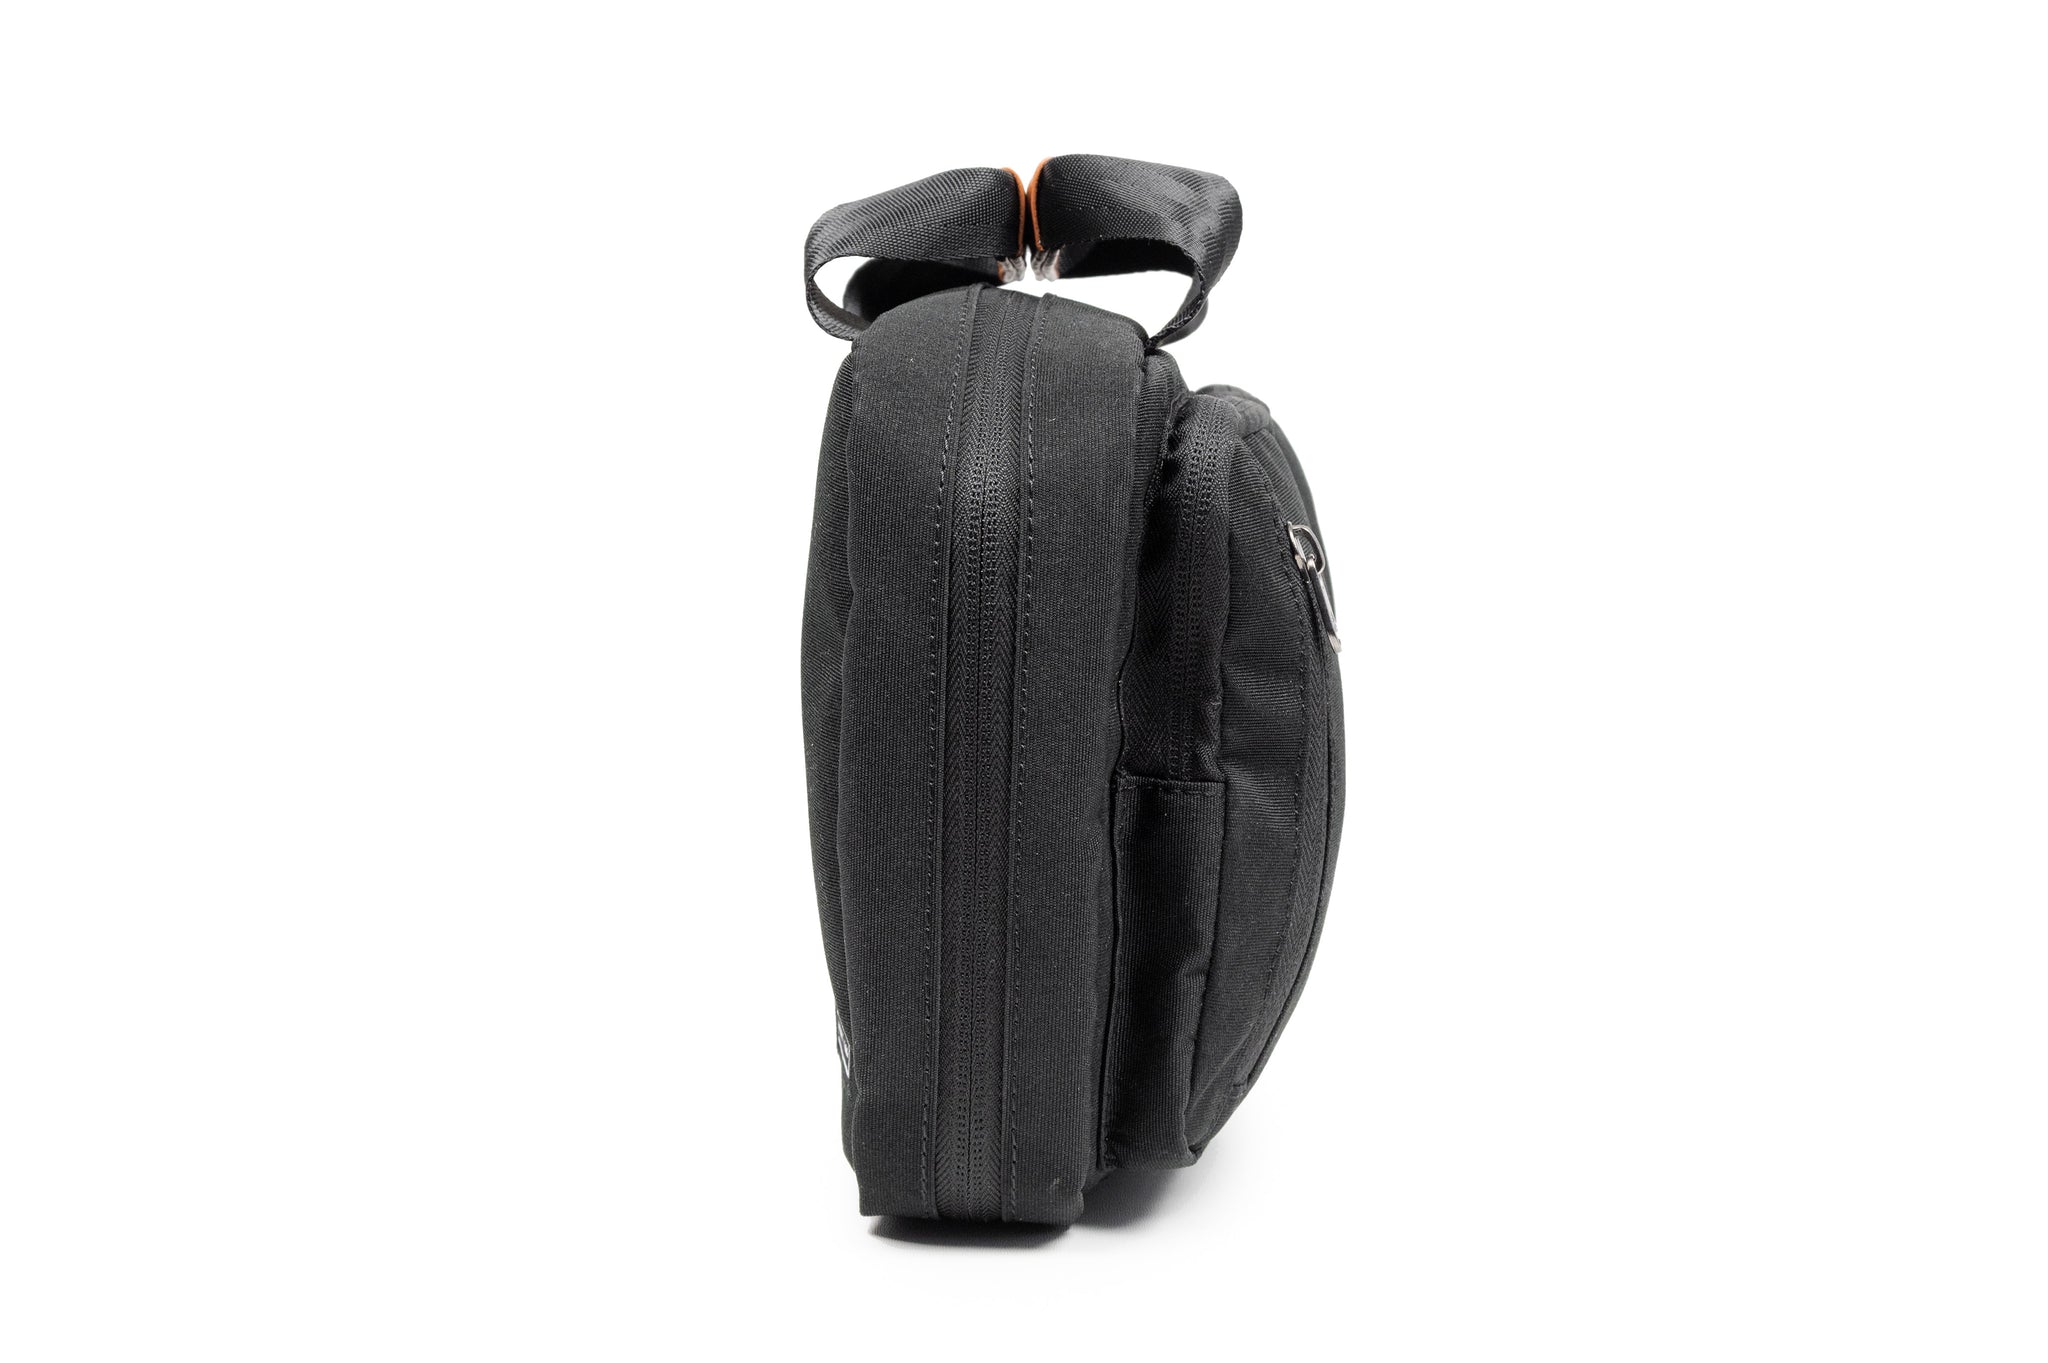 PKG Simcoe Recycled Essentials Bag by PKG Carry Goods